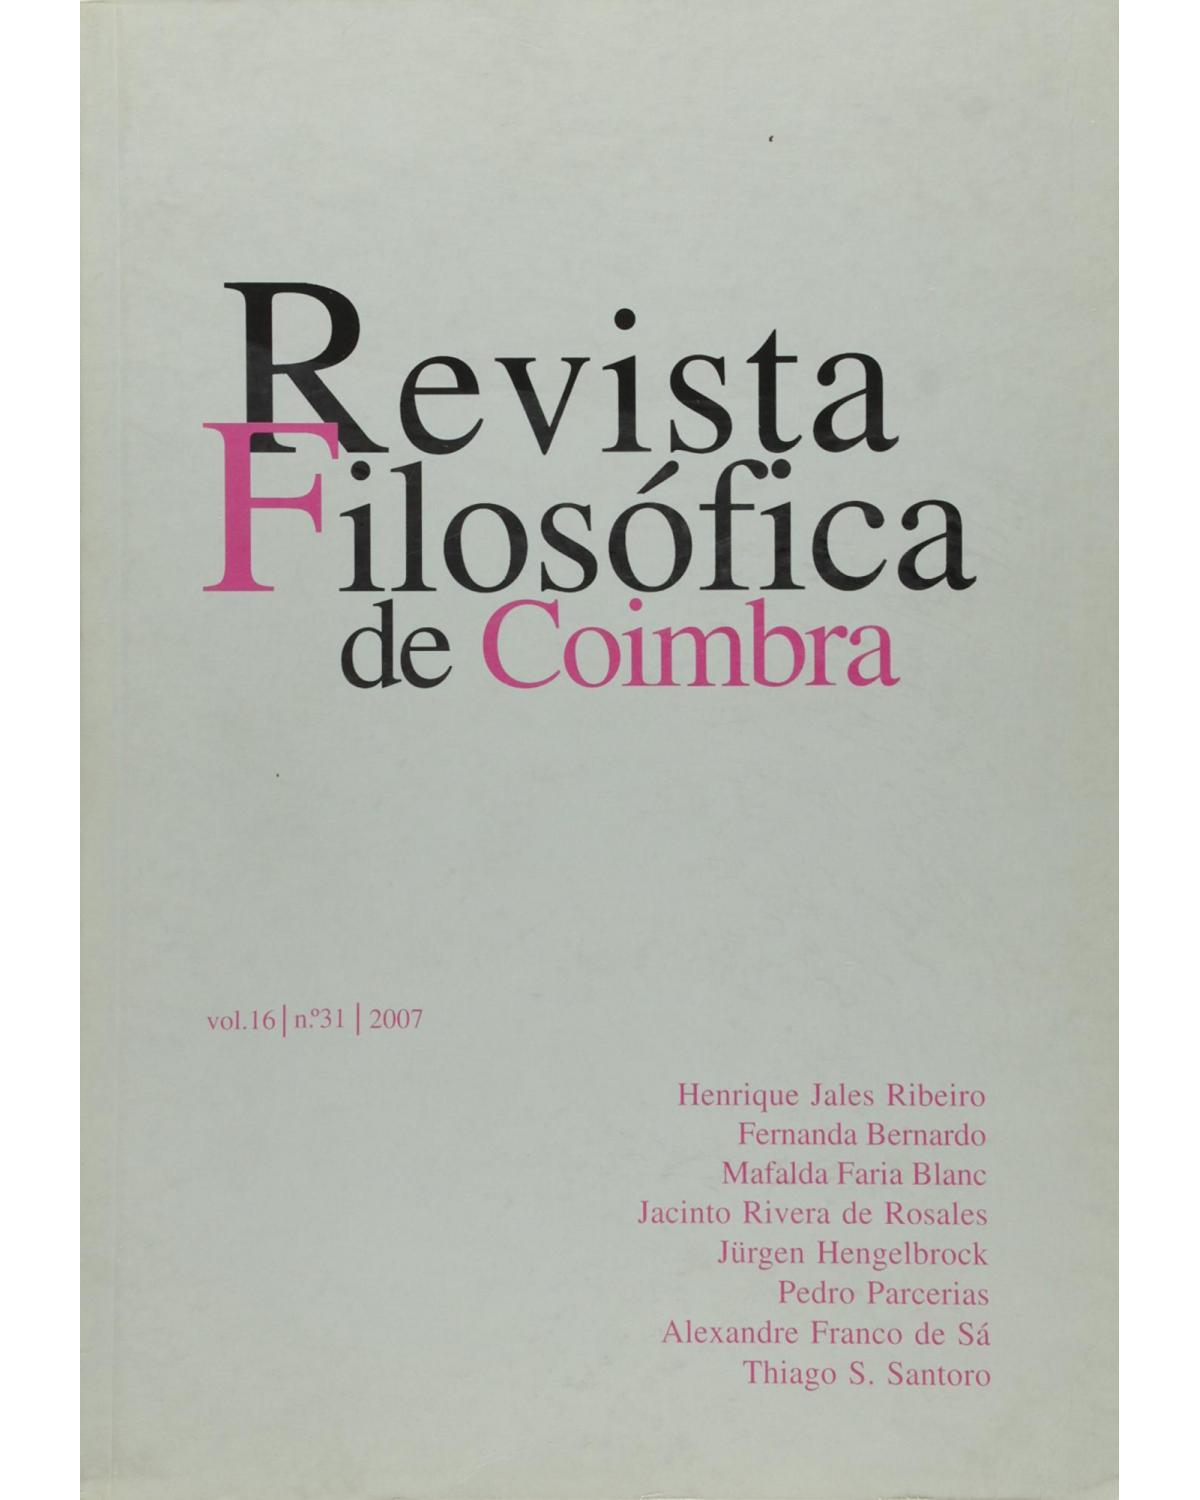 Revista filosófica de Coimbra - Volume 16: nº 31 - 2007 - 1ª Edição | 2007